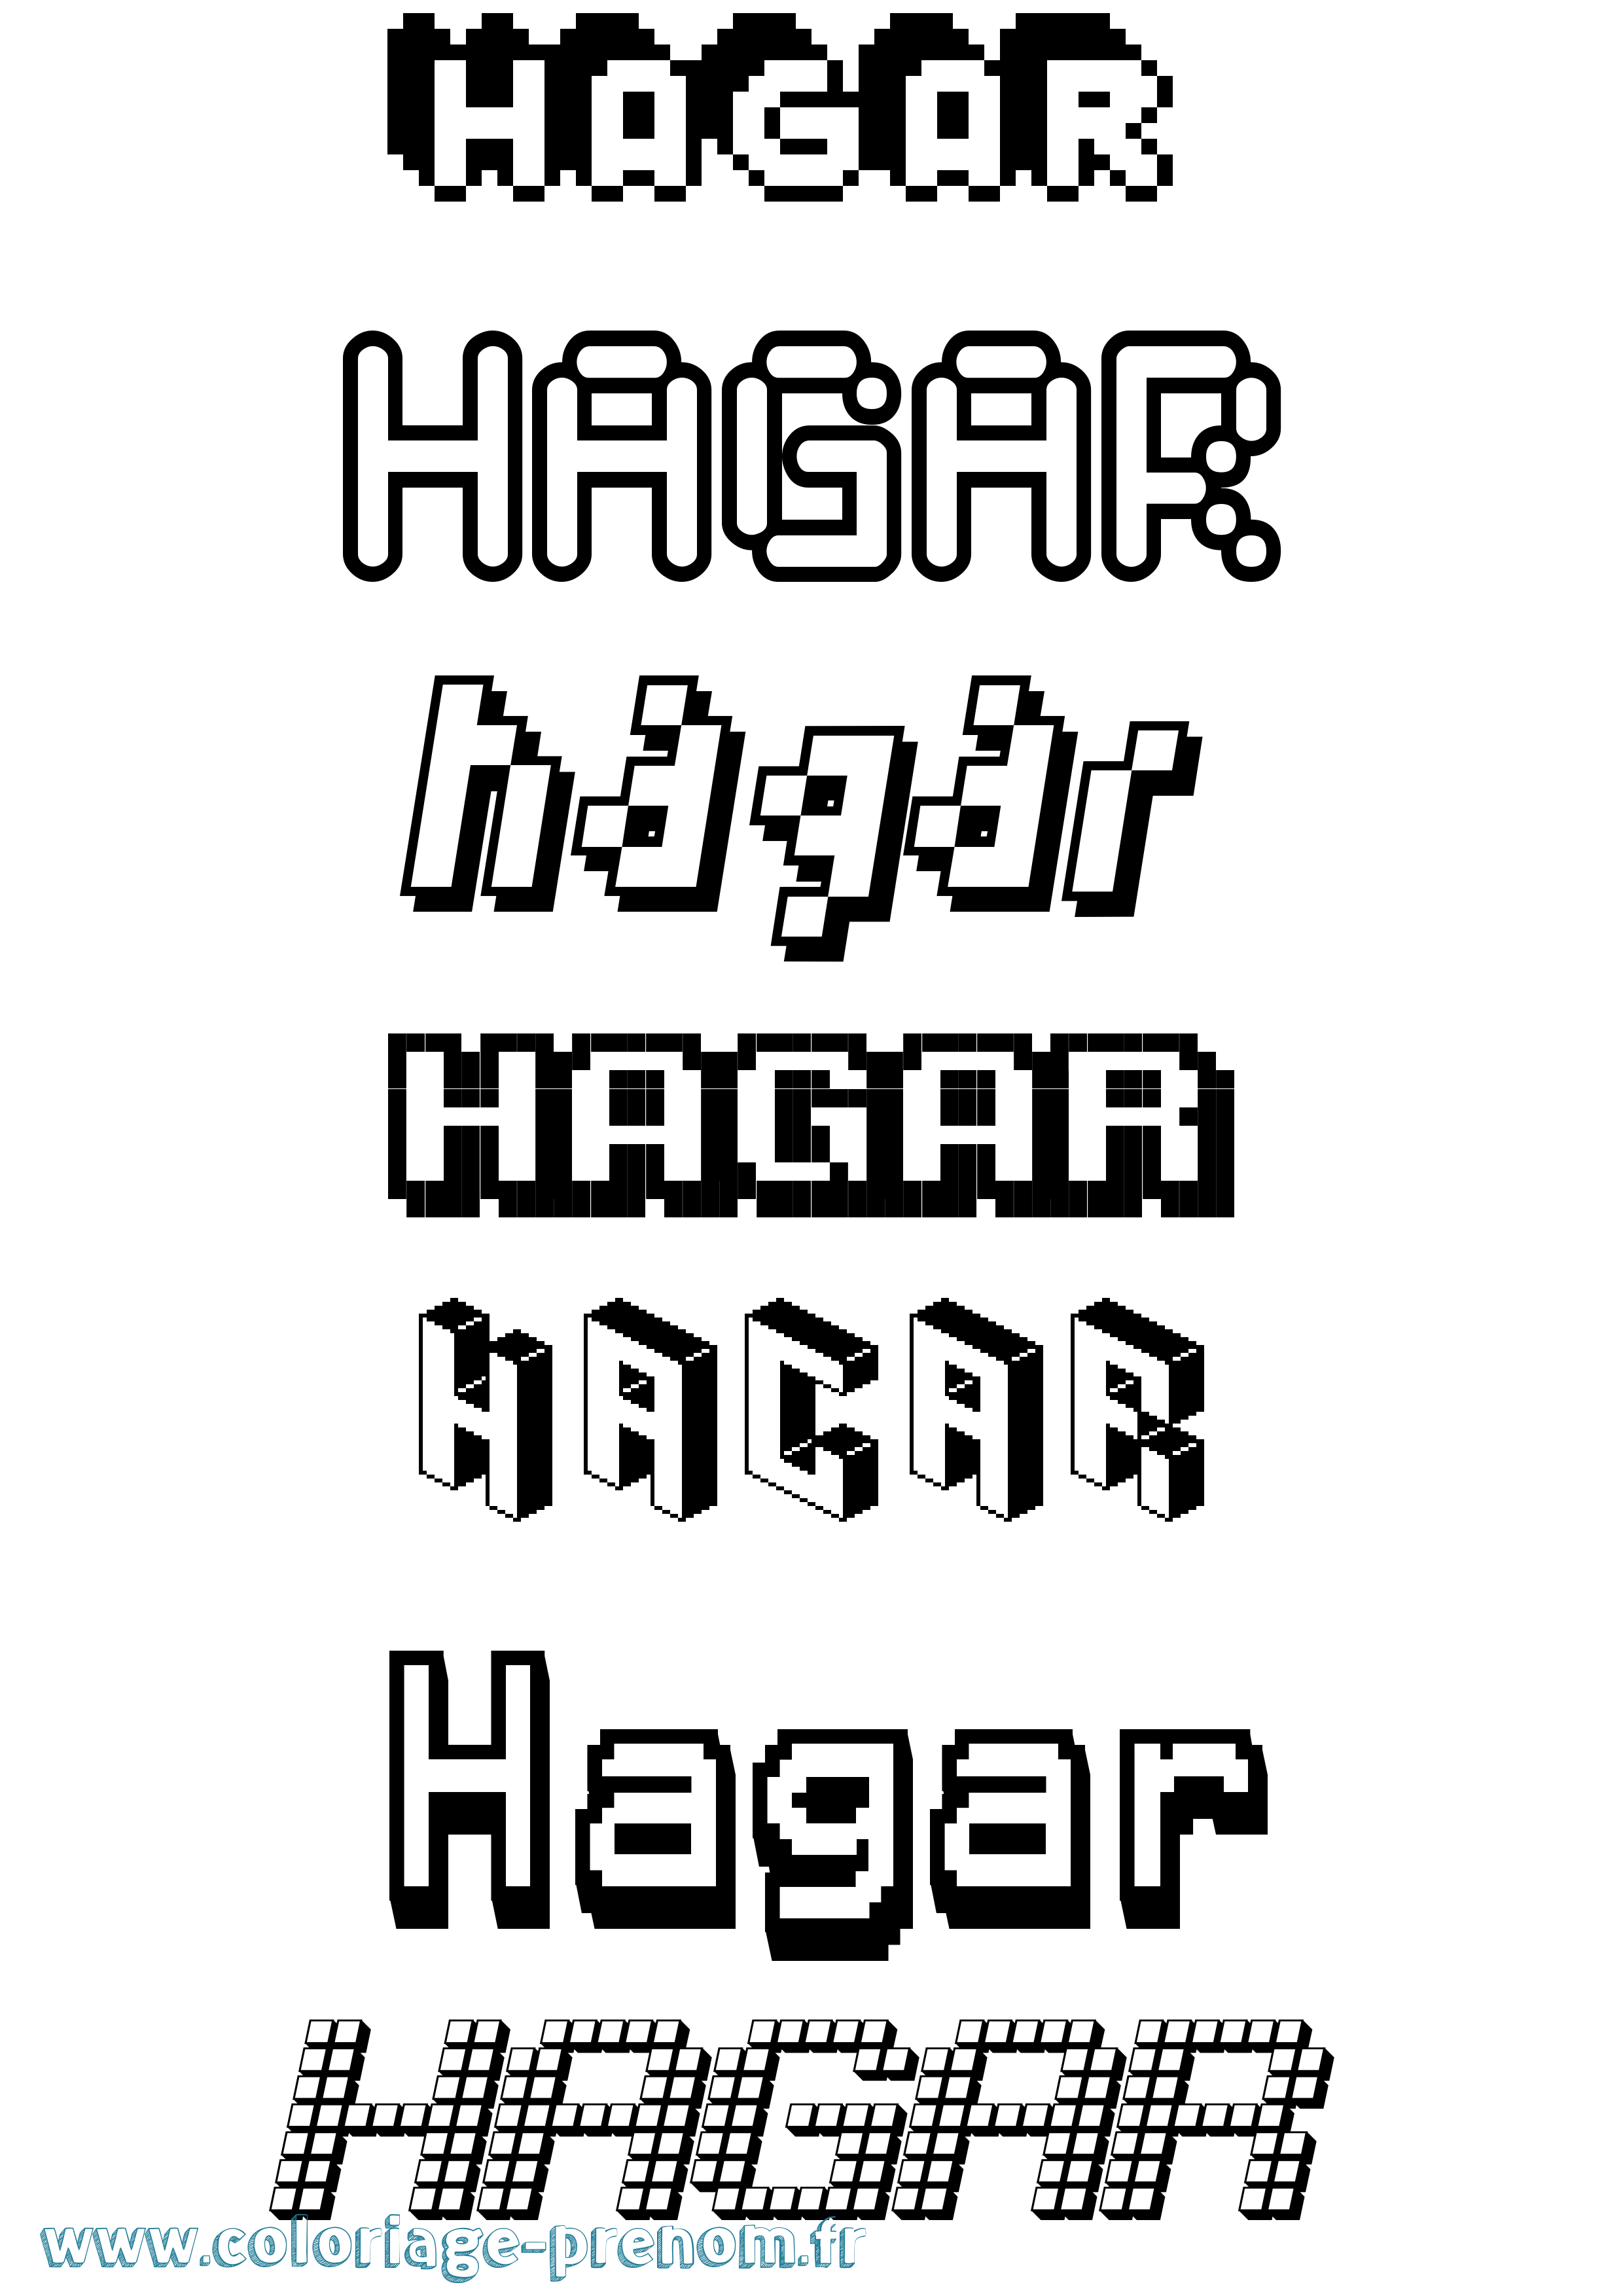 Coloriage prénom Hagar Pixel